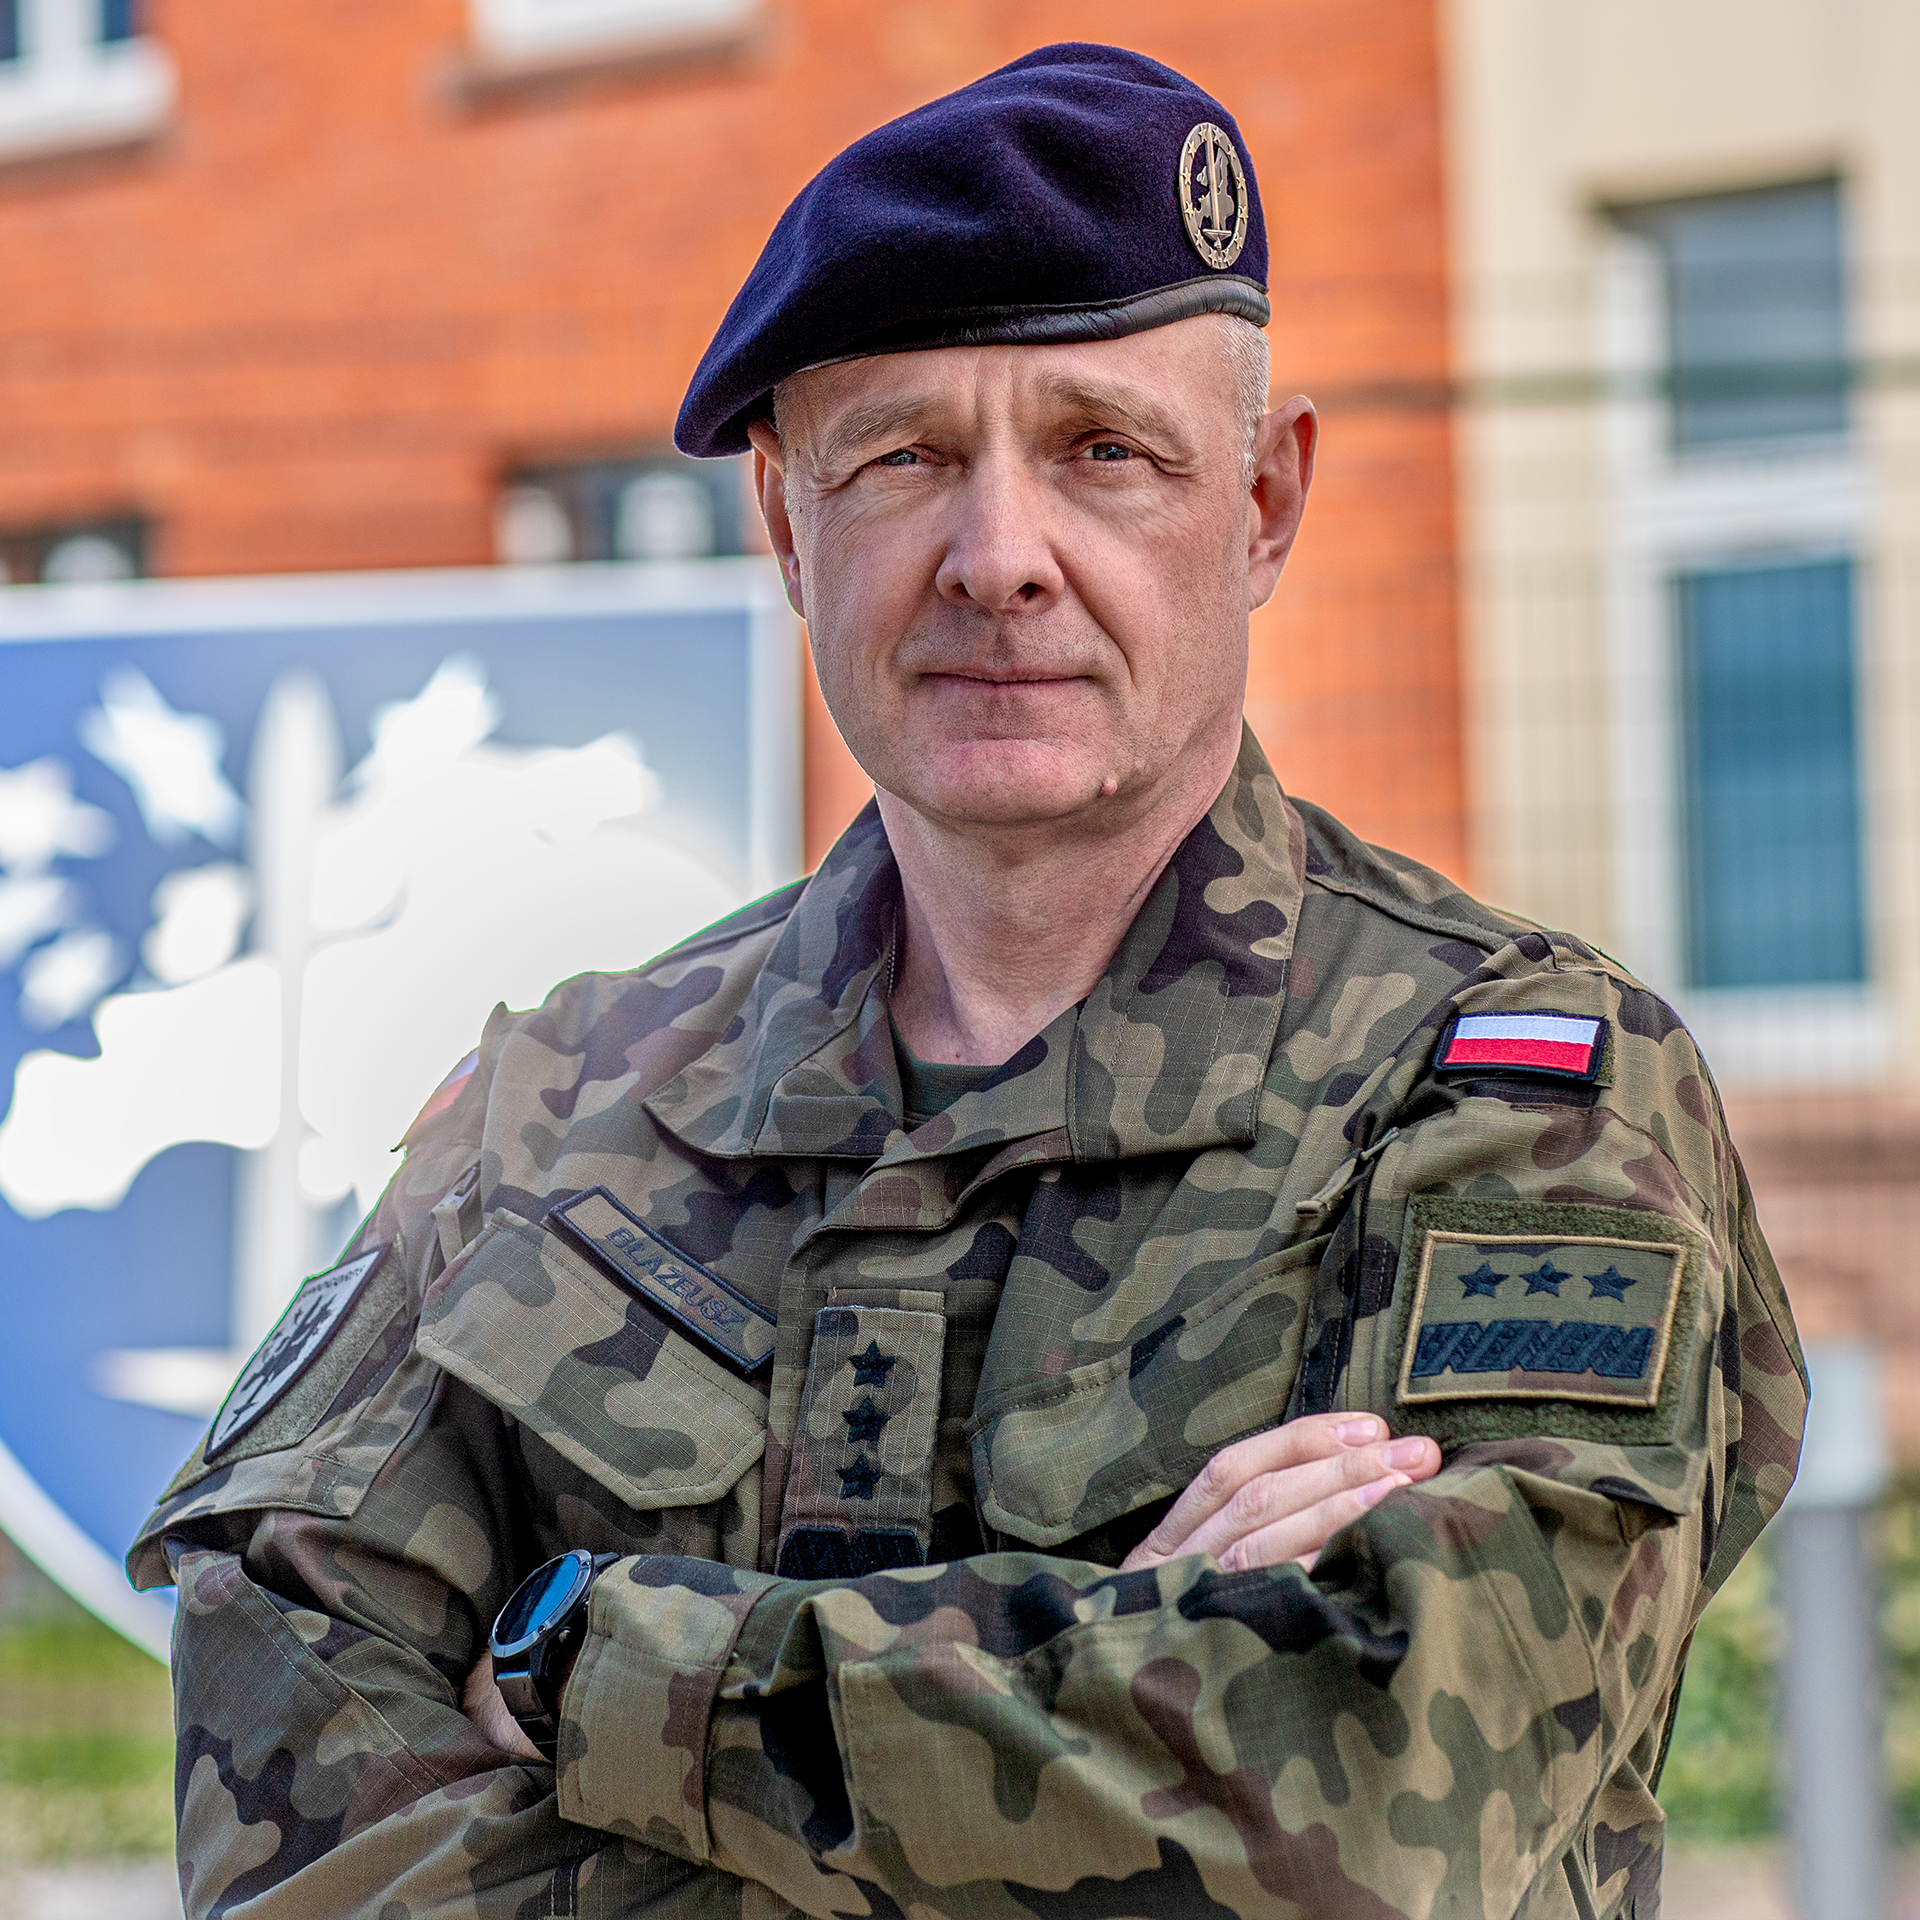 Lieutenant Generał Piotr BLAZEUSZ, commander of Eurocorps